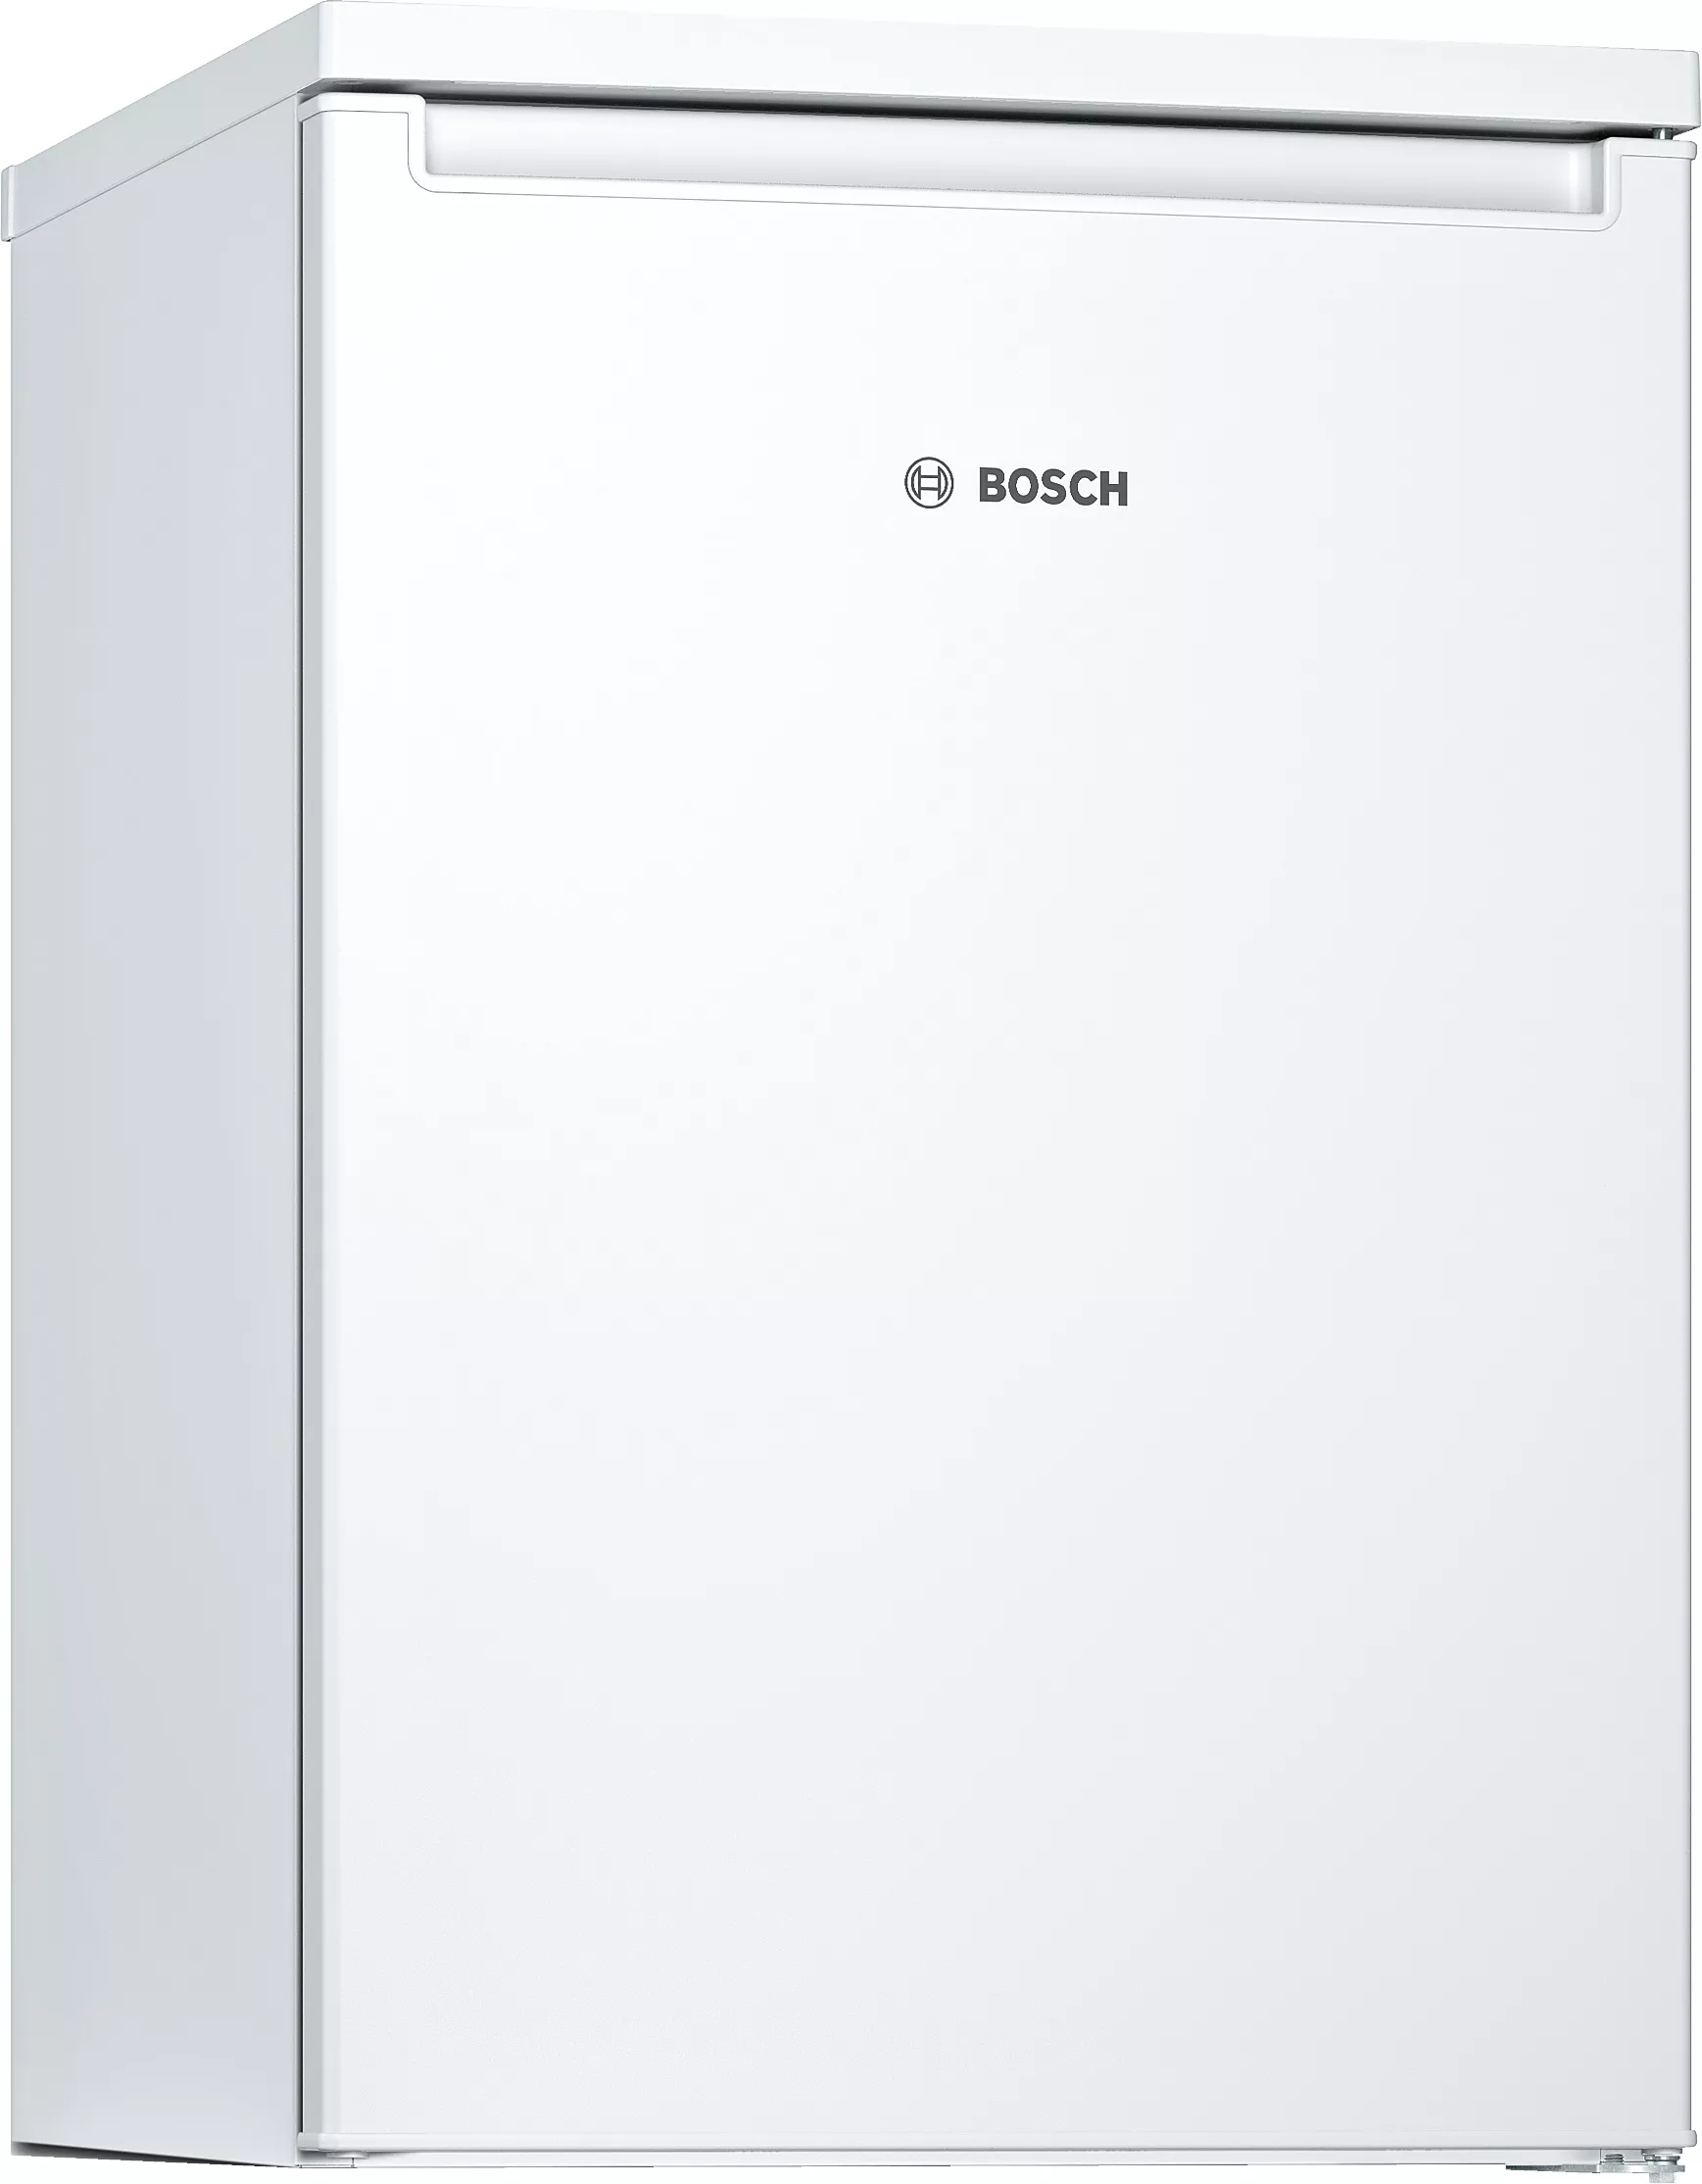 Bosch Serie 2, Tischkühlschrank, Weiß, KTR15NWEA